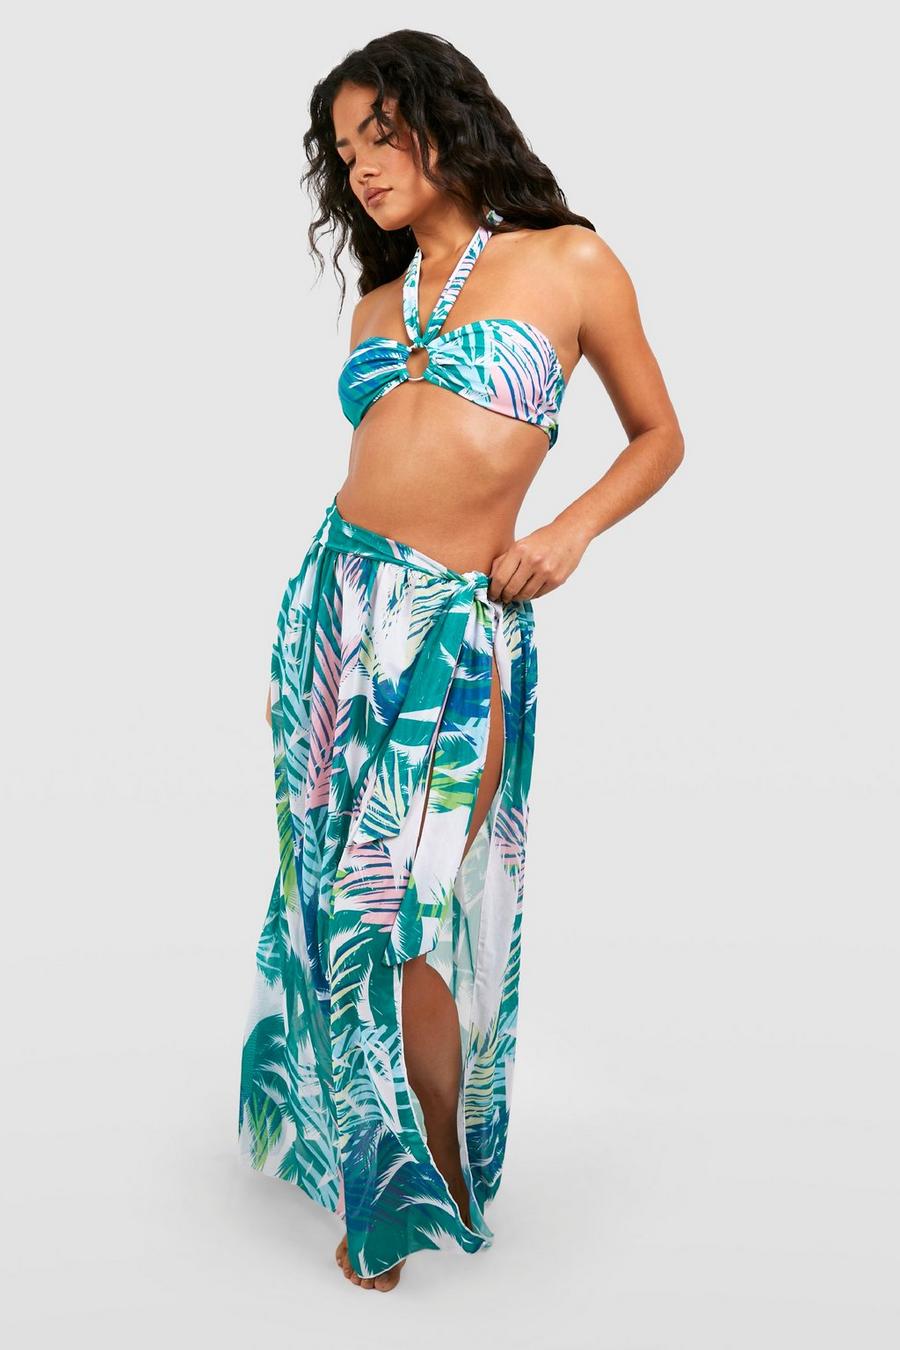 https://media.boohoo.com/i/boohoo/gzz61916_green_xl/female-green-tropical-3-pack-bikini-set-&-maxi-sarong/?w=900&qlt=default&fmt.jp2.qlt=70&fmt=auto&sm=fit